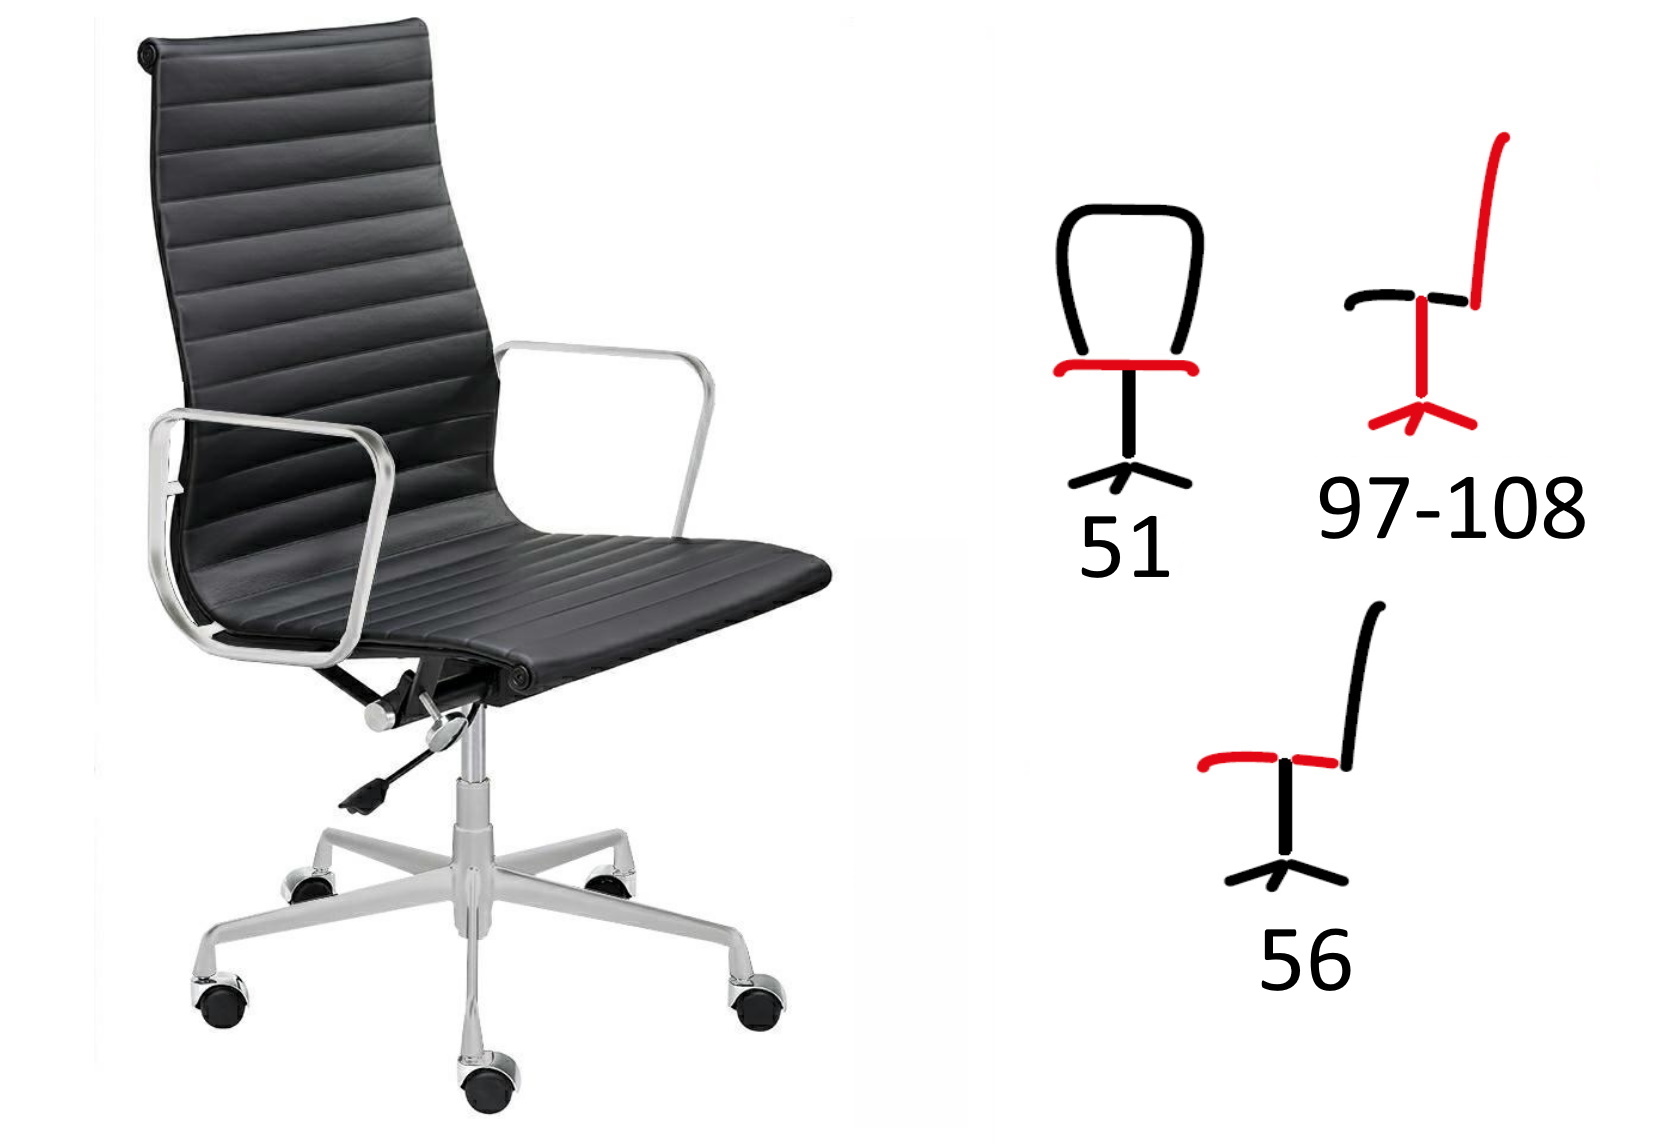 czarny, skórzany fotel biurowy aeron prestige plus, fotel ze skóry naturalnej